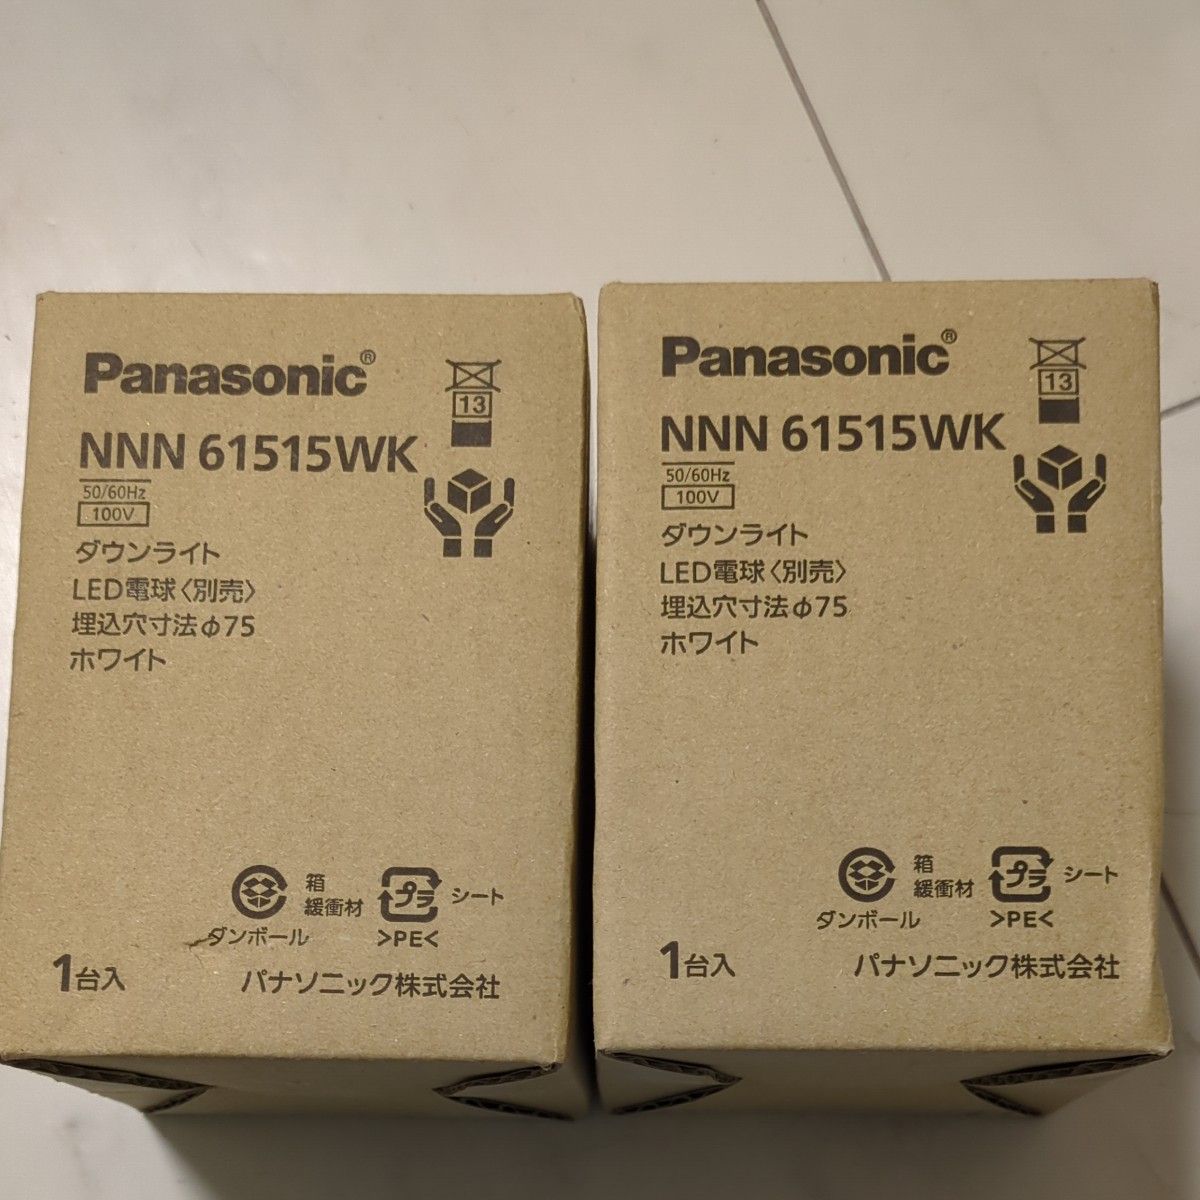 パナソニック Panasonic ダウンライト LED LEDダウンライト NNN61515WK 埋込